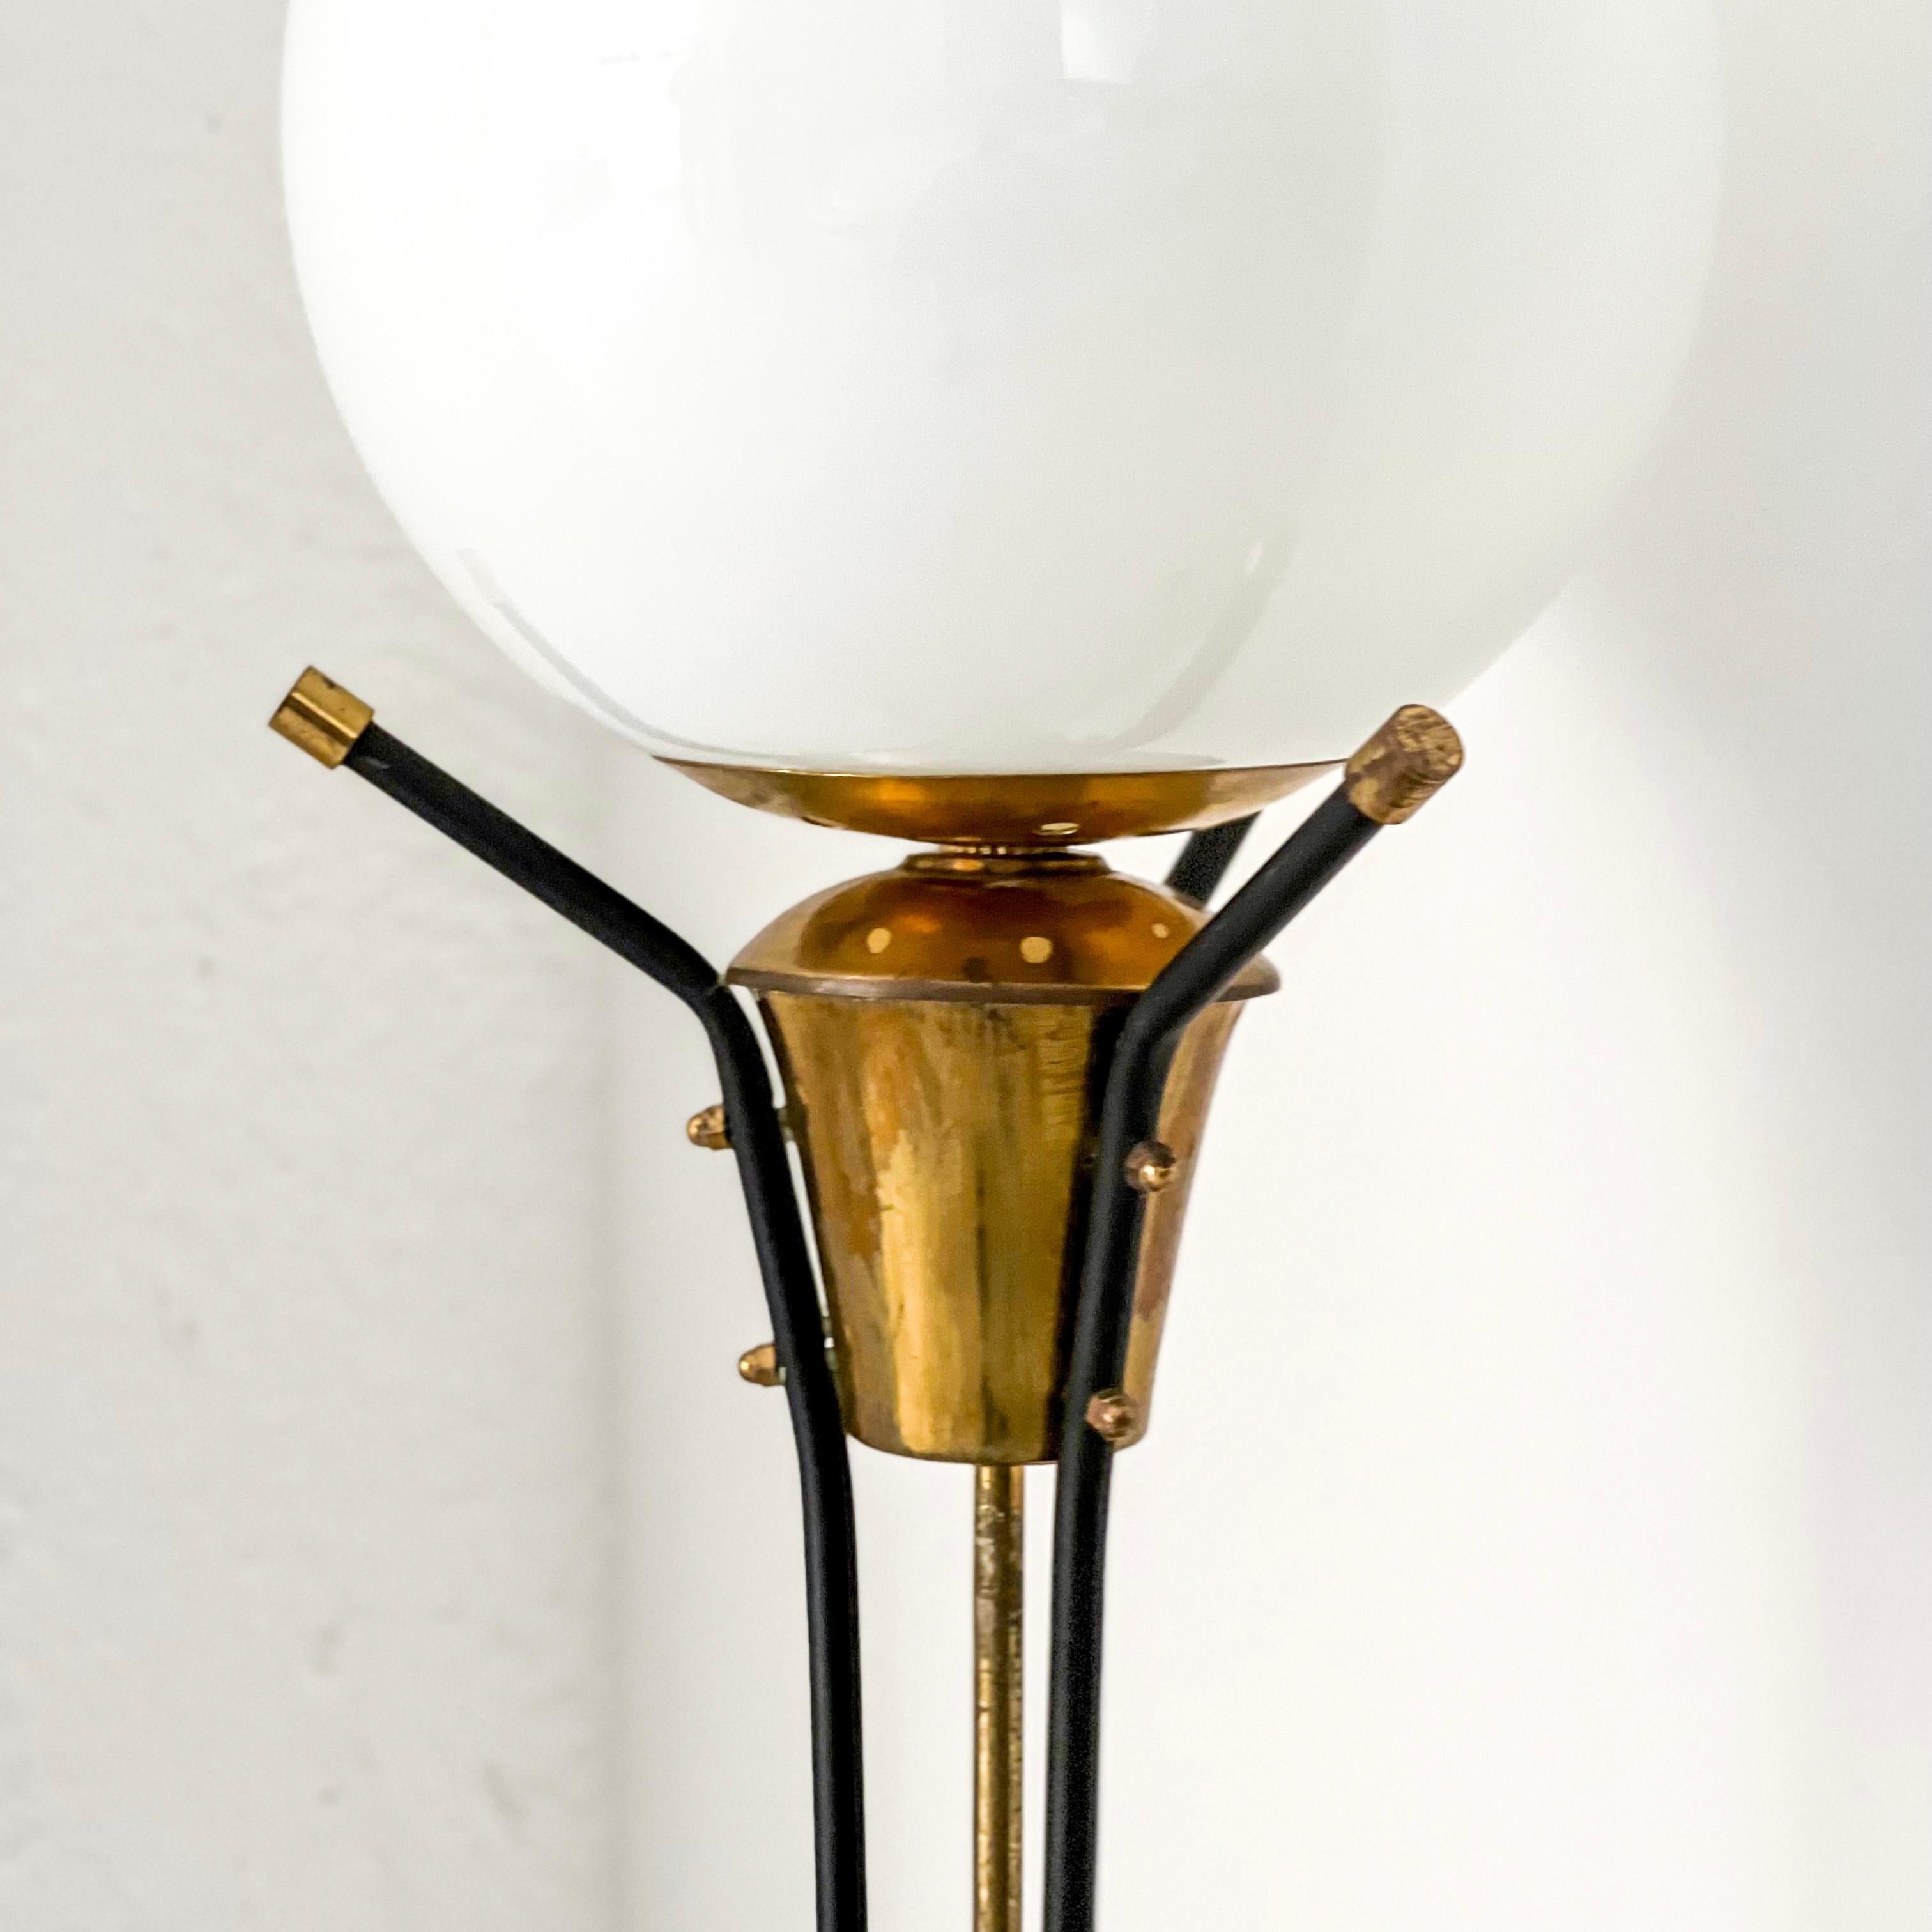 Nous proposons à la vente un magnifique lampadaire, rare et bien conservé, produit en Italie et datant des années 1950. Il s'agit d'un lampadaire de hauteur moyenne, avec une base fine composée de trois élégants pieds en laiton. Au-dessus des pieds,